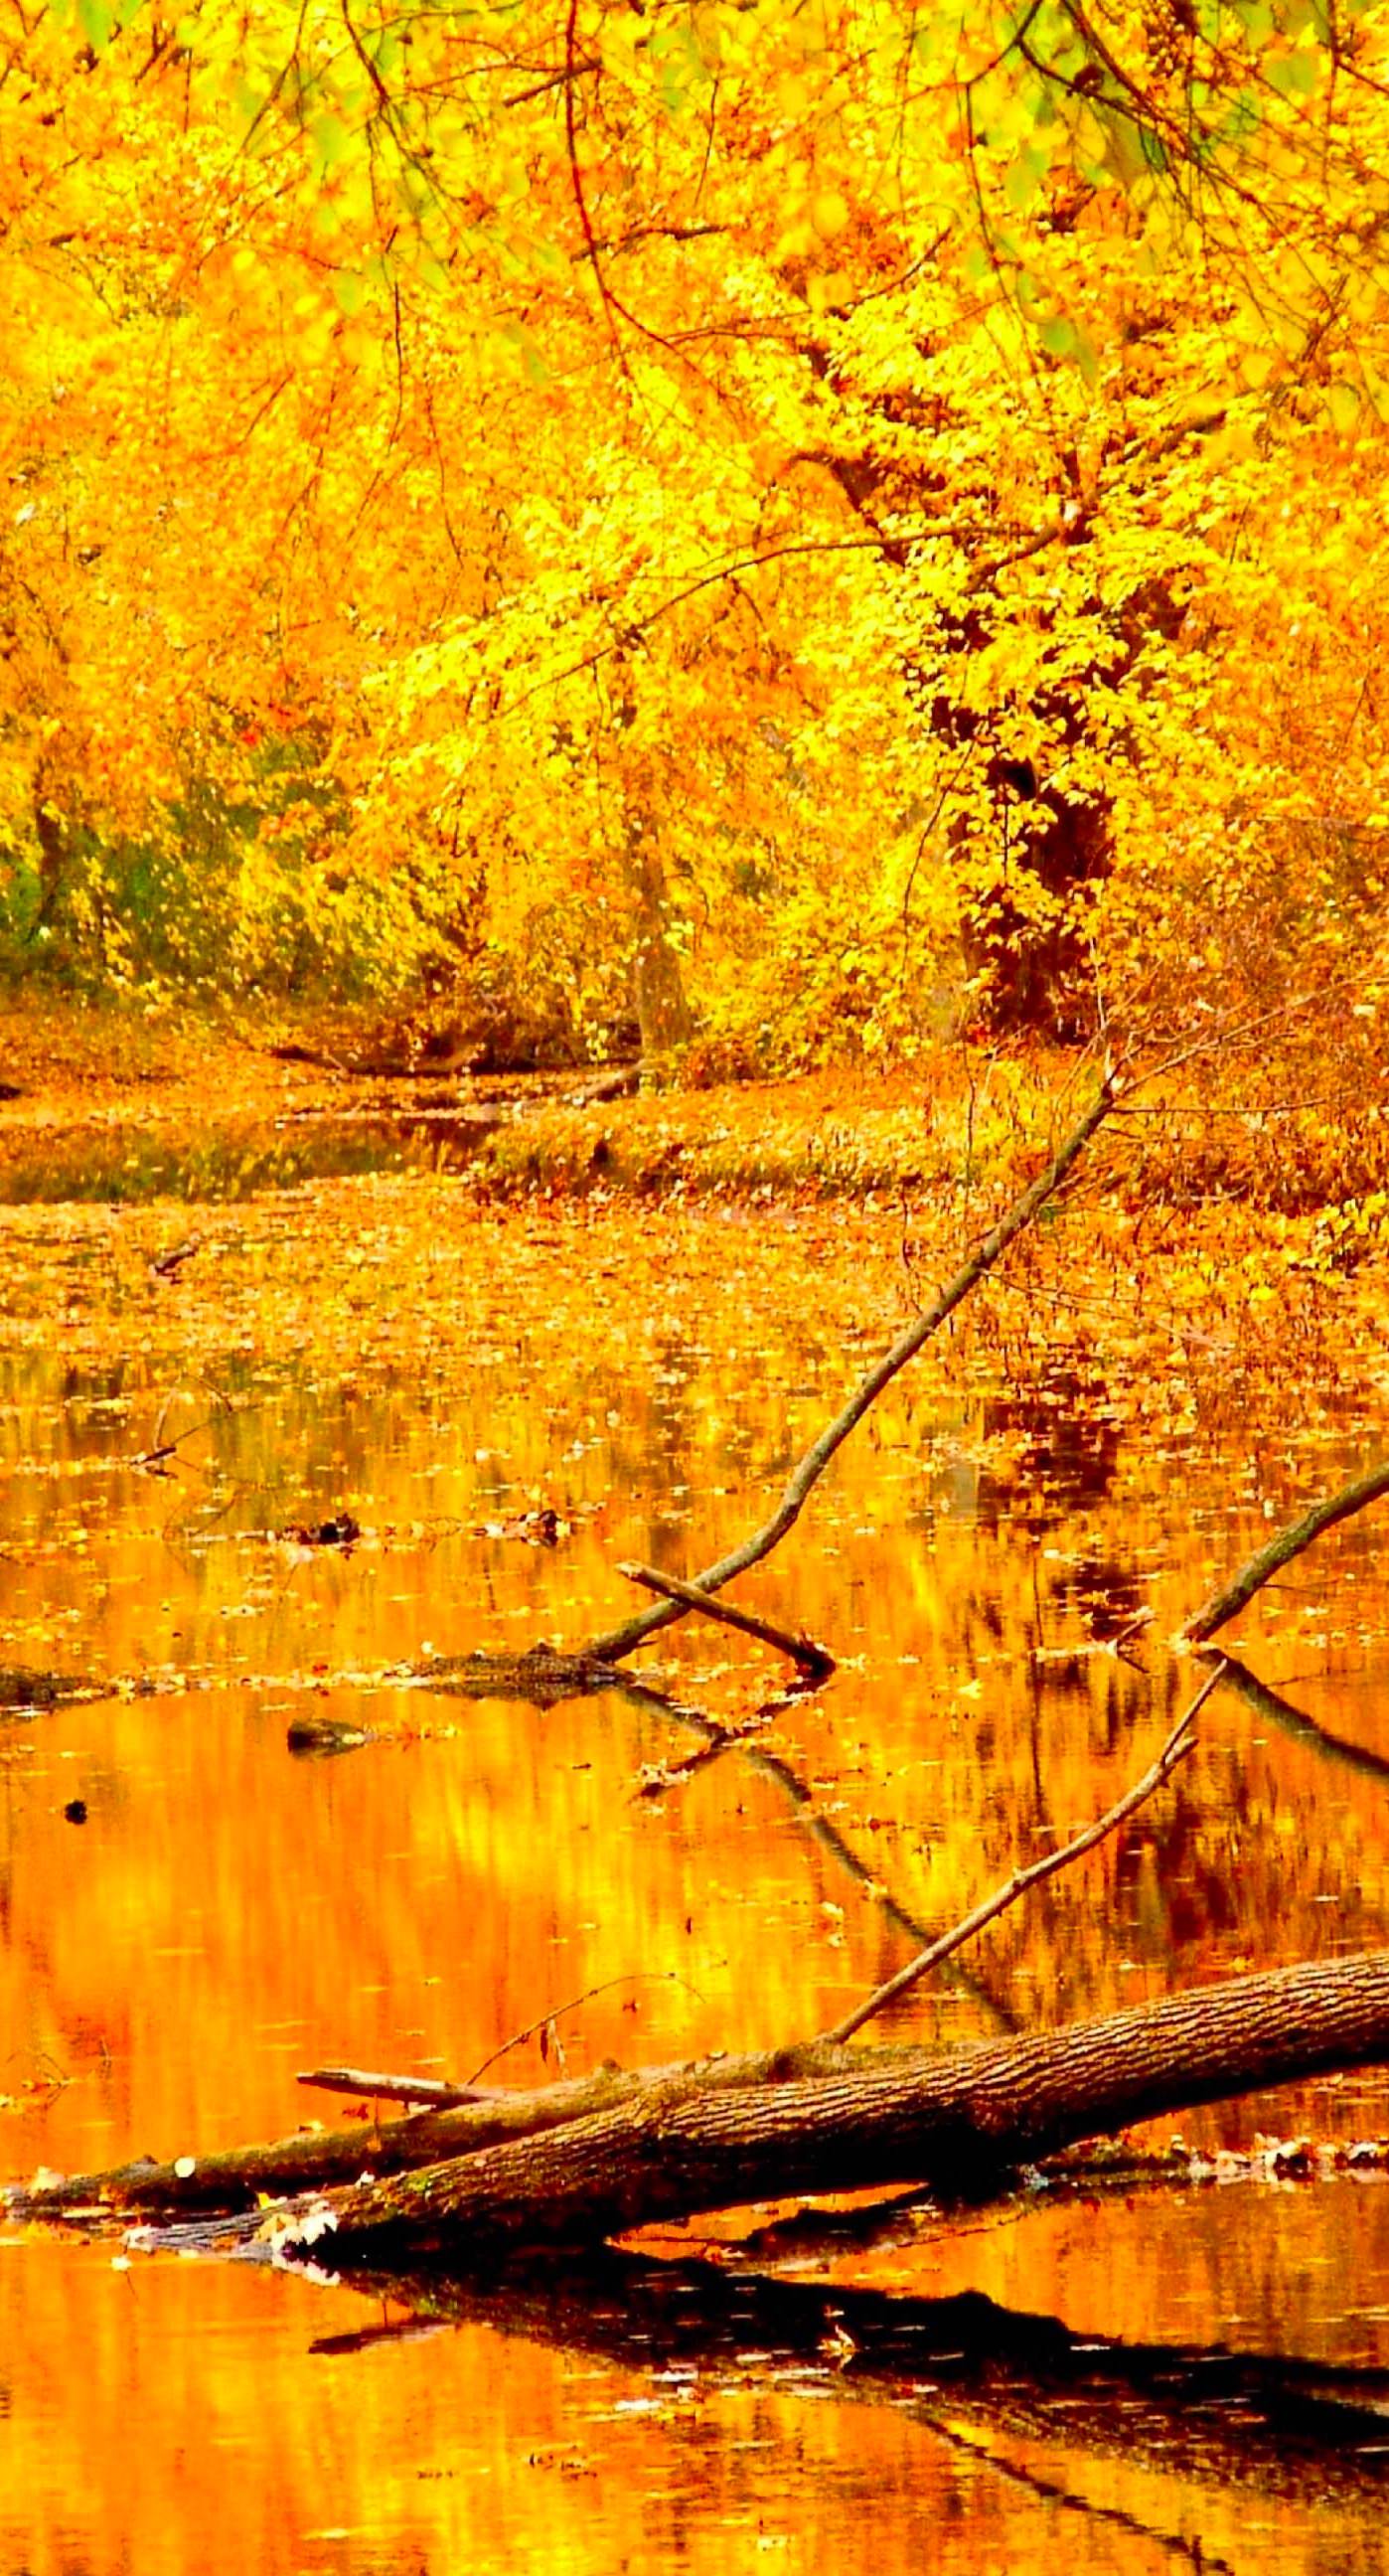 Scenery natural yellow | wallpaper.sc iPhone6sPlus